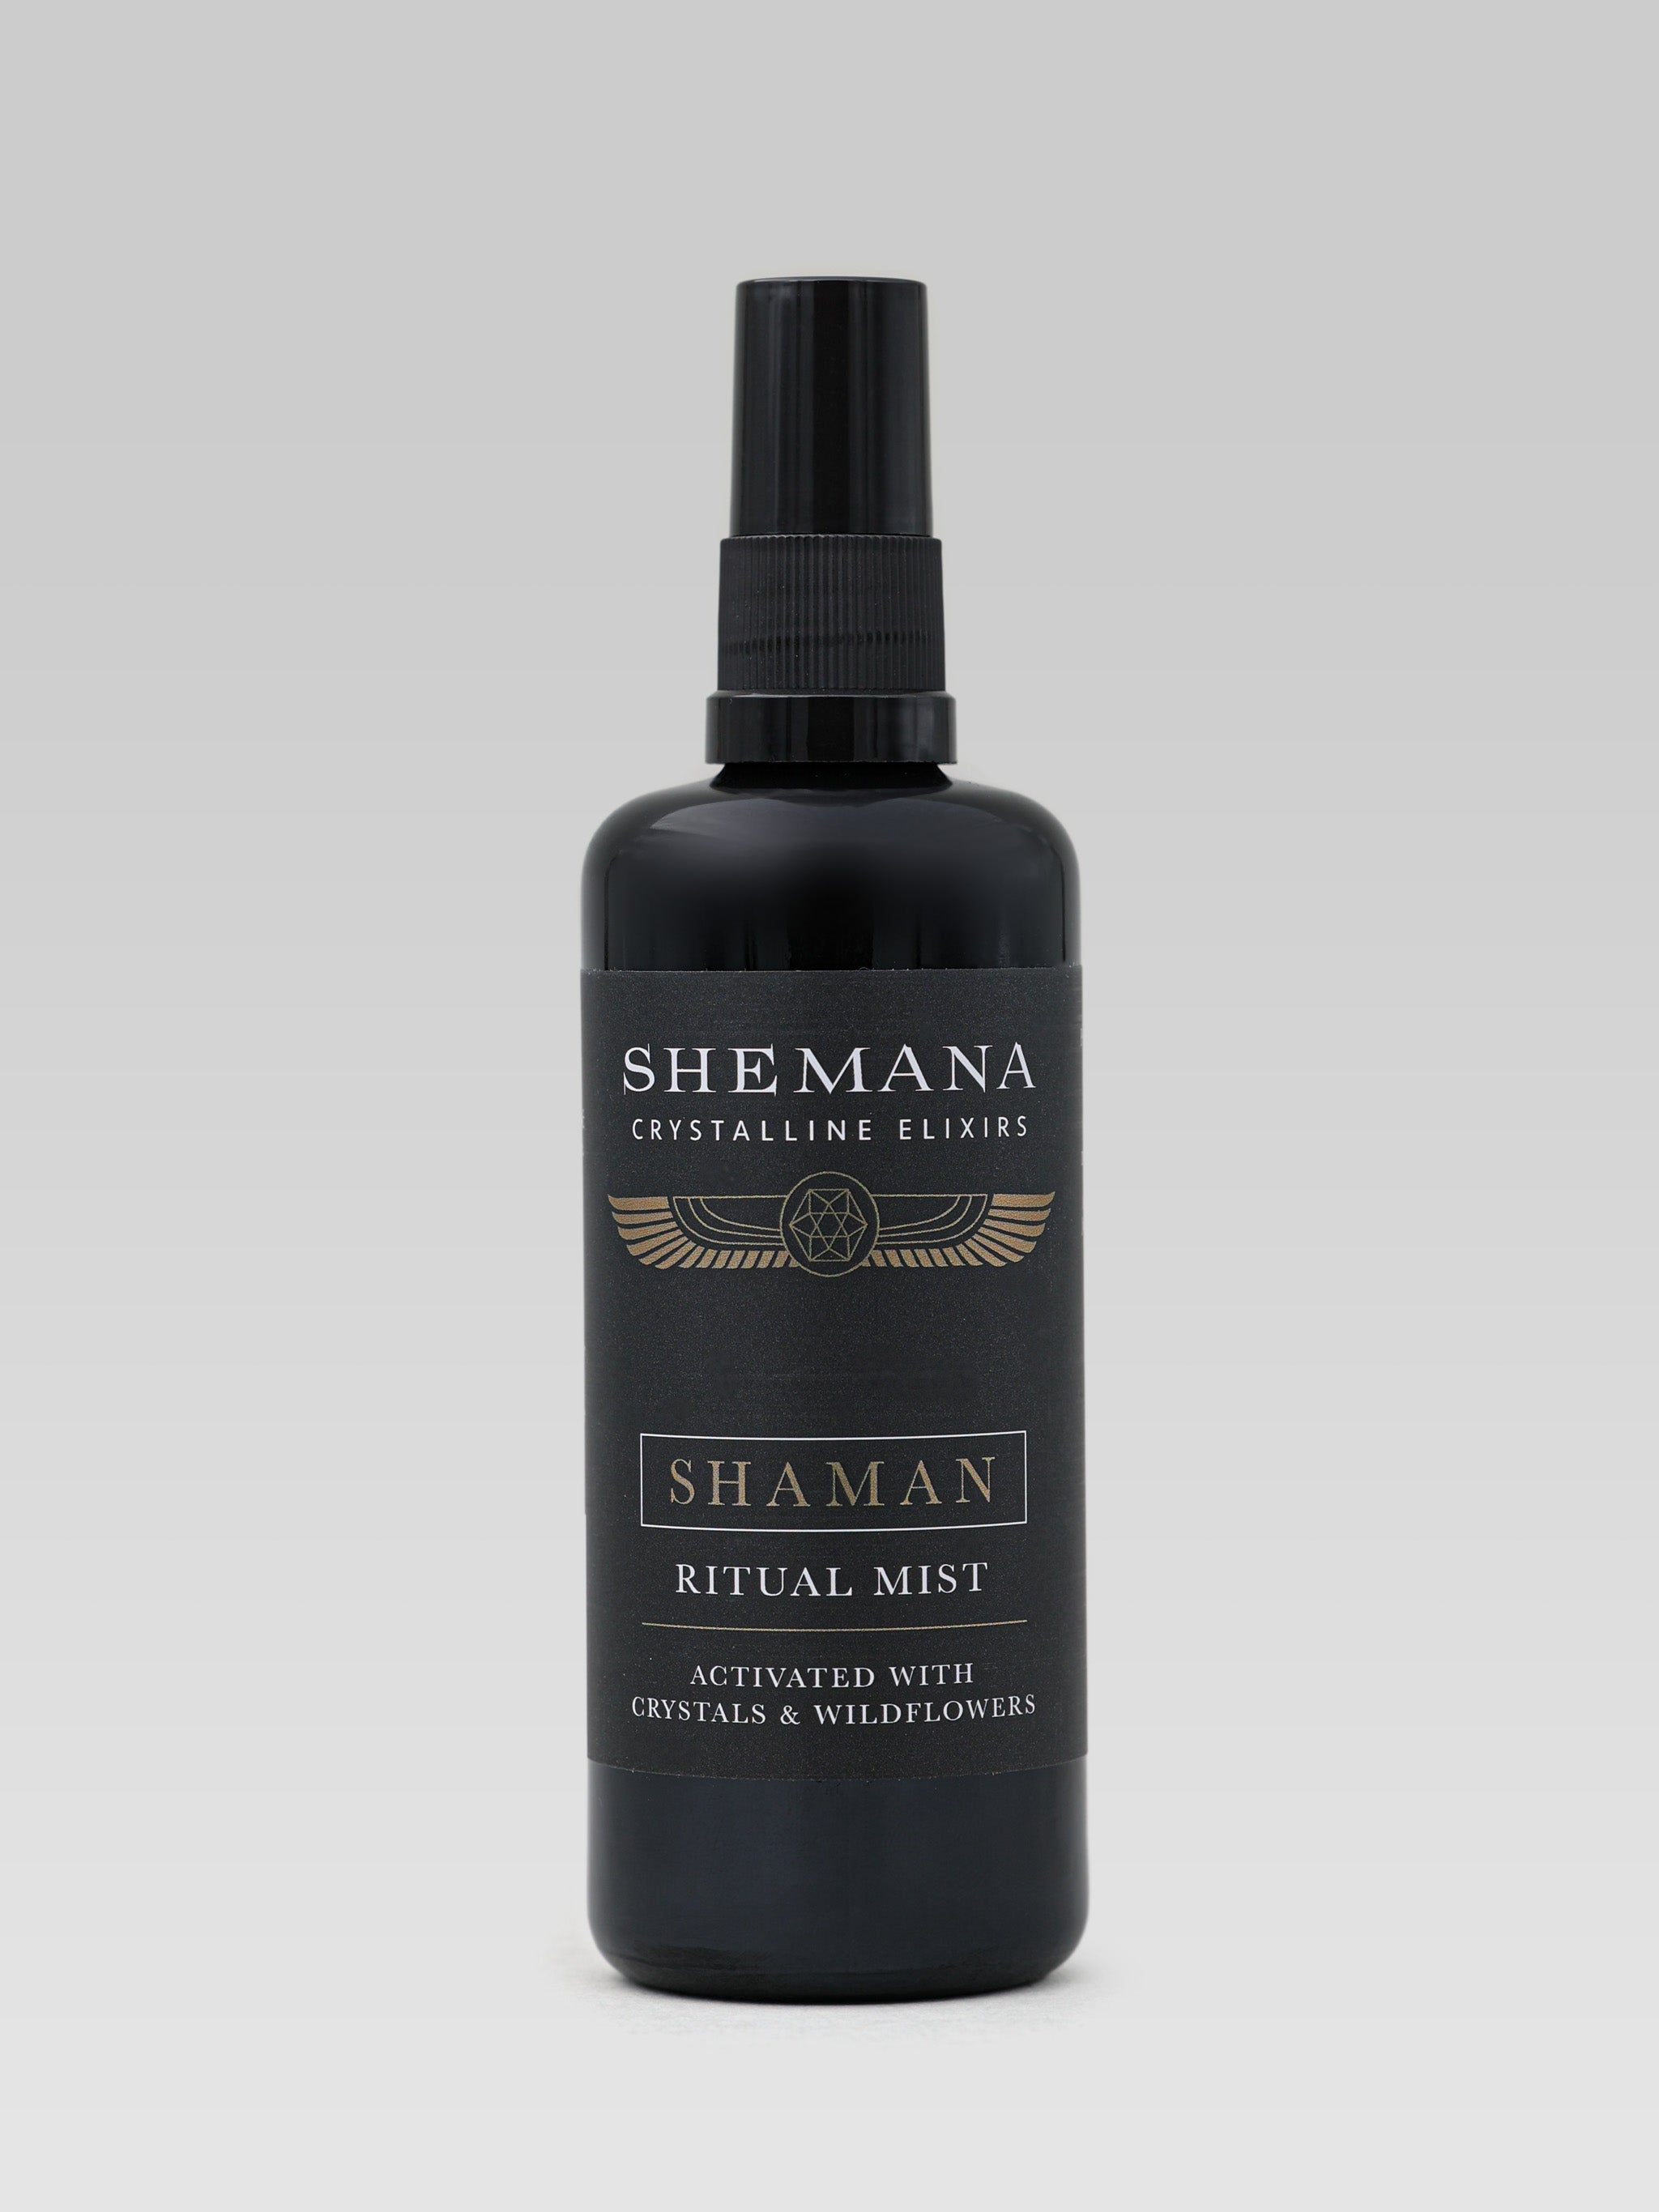 Shemana Shaman Ritual Mist product shot 